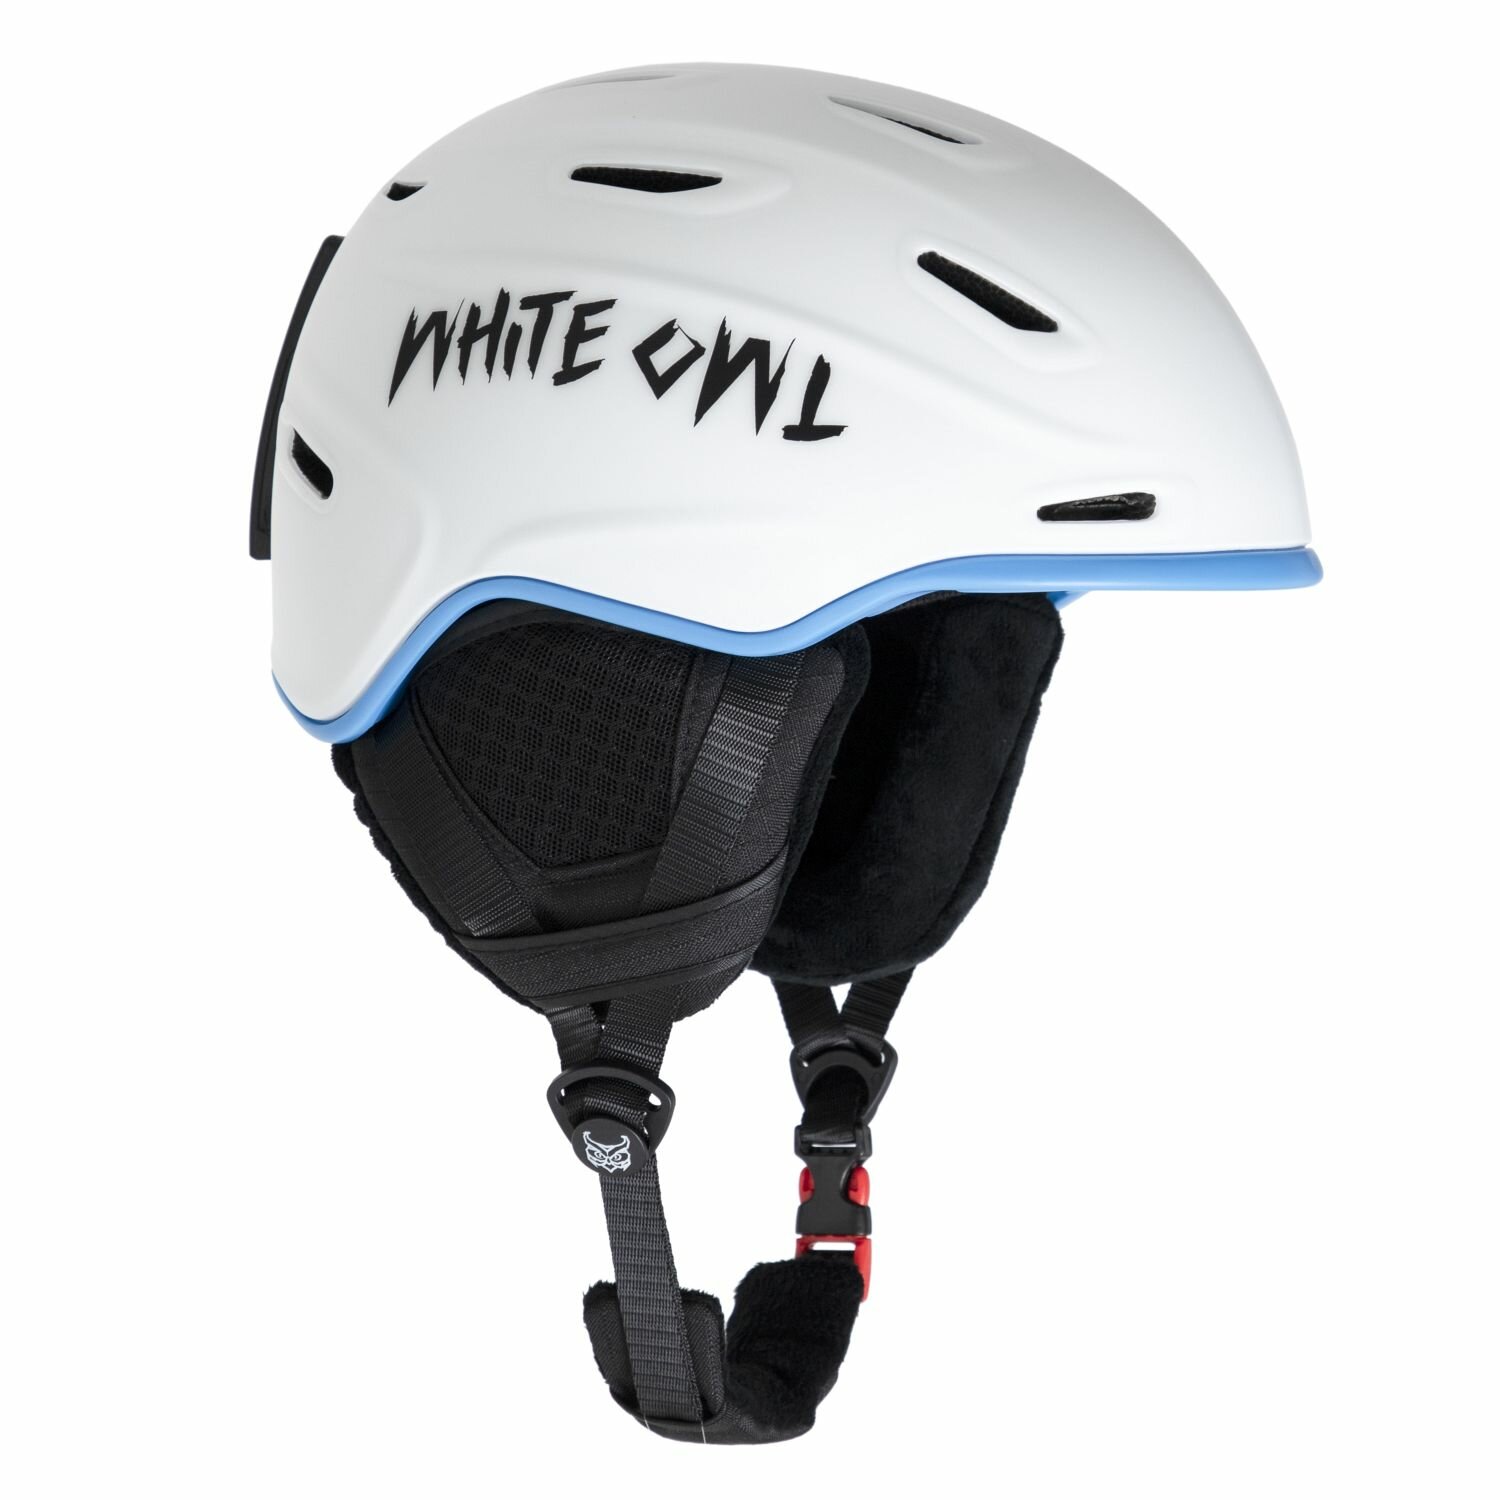 Шлем зимний White Owl HK004 (Шлем зимний White Owl HK004, S (48-53 см), белый с синим)